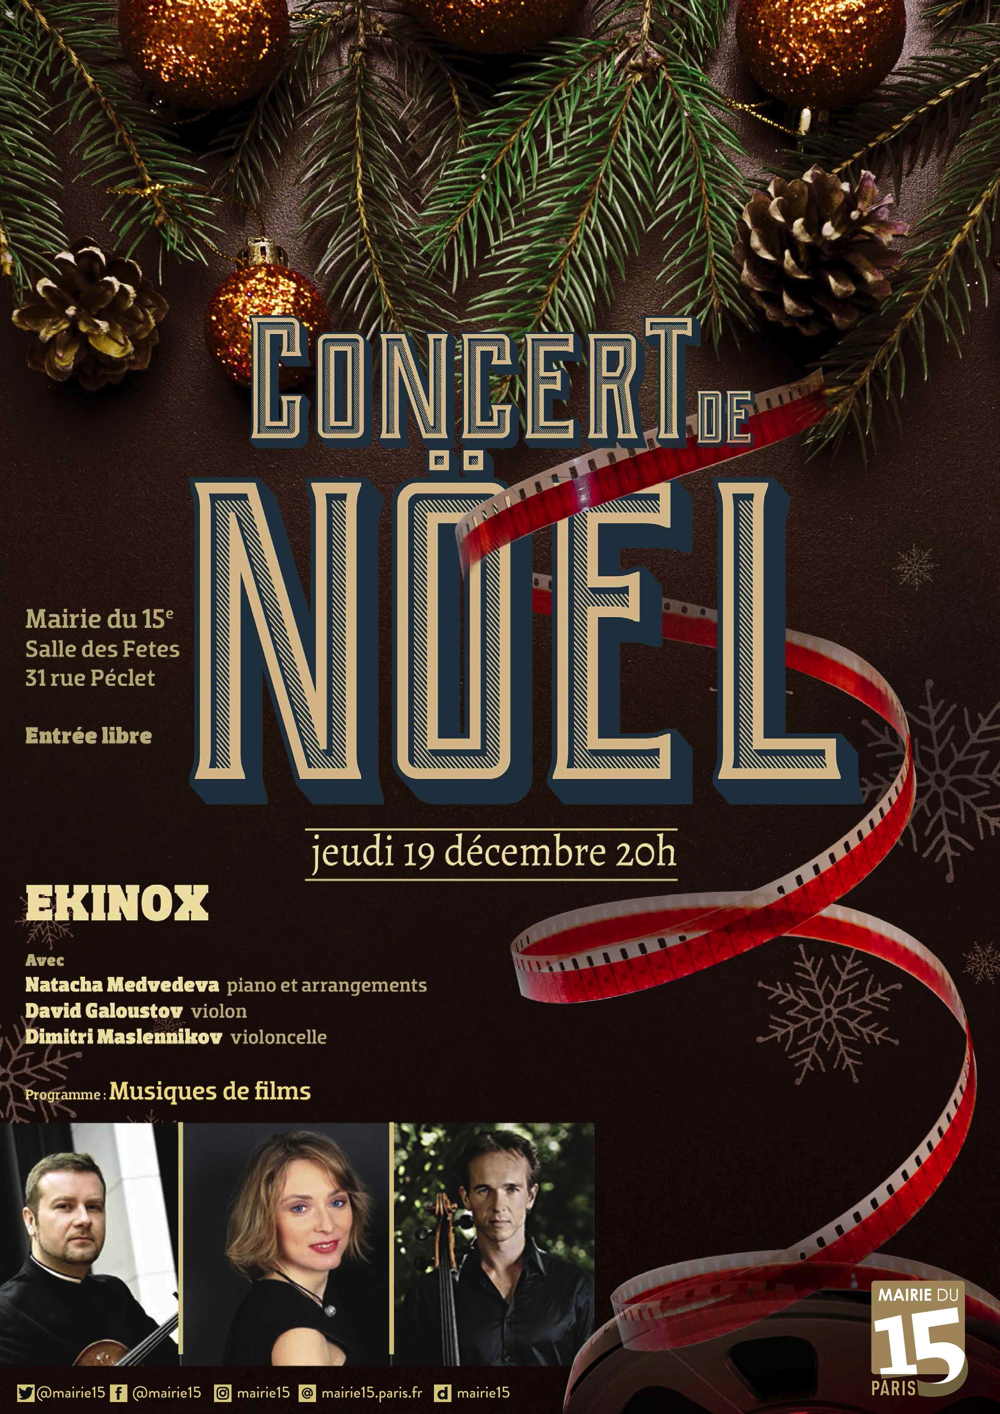 Affiche. Paris. Trio EKINOX. Concert de Noël. Musiques de films. 2019-12-19